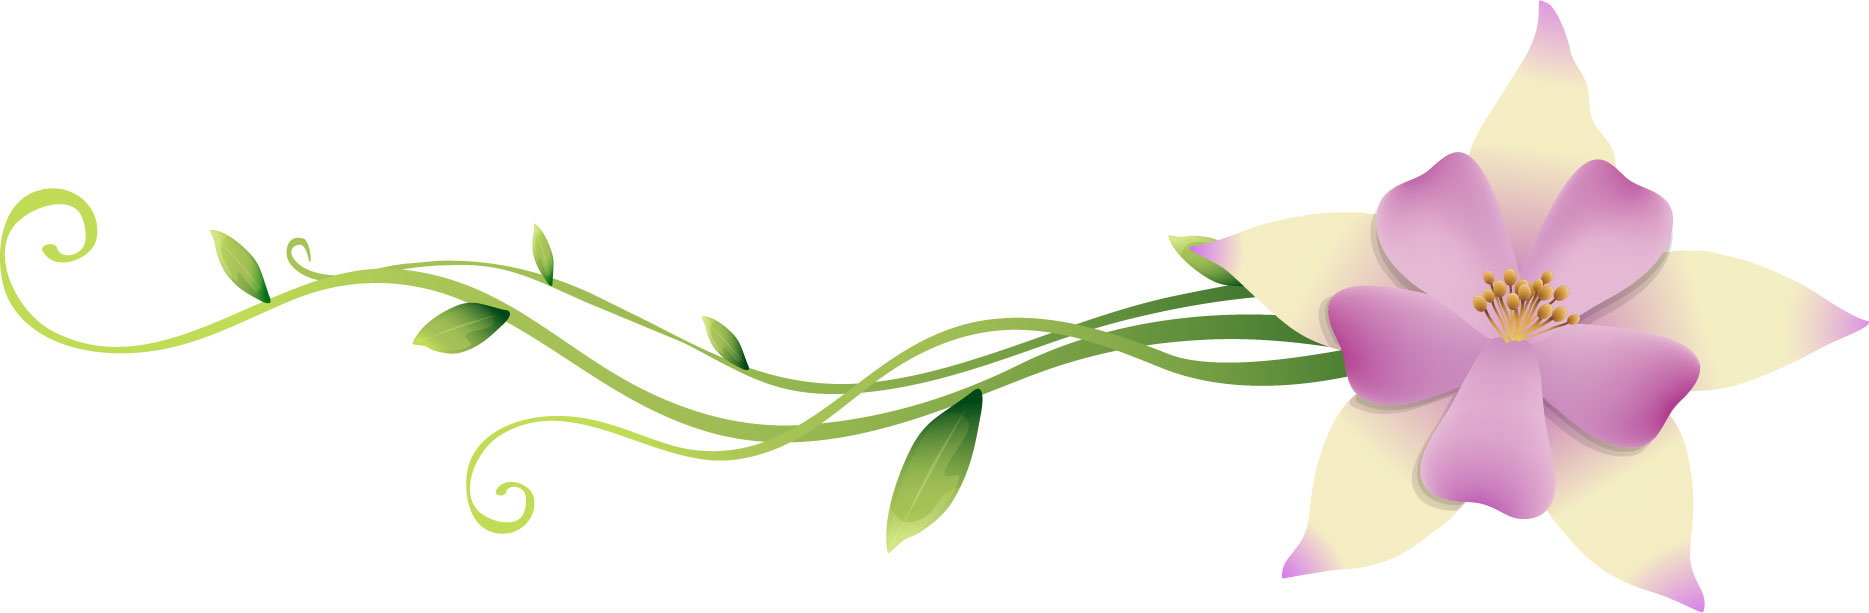 花のイラスト フリー素材 フレーム枠no 111 白紫 蔦 蔓 葉